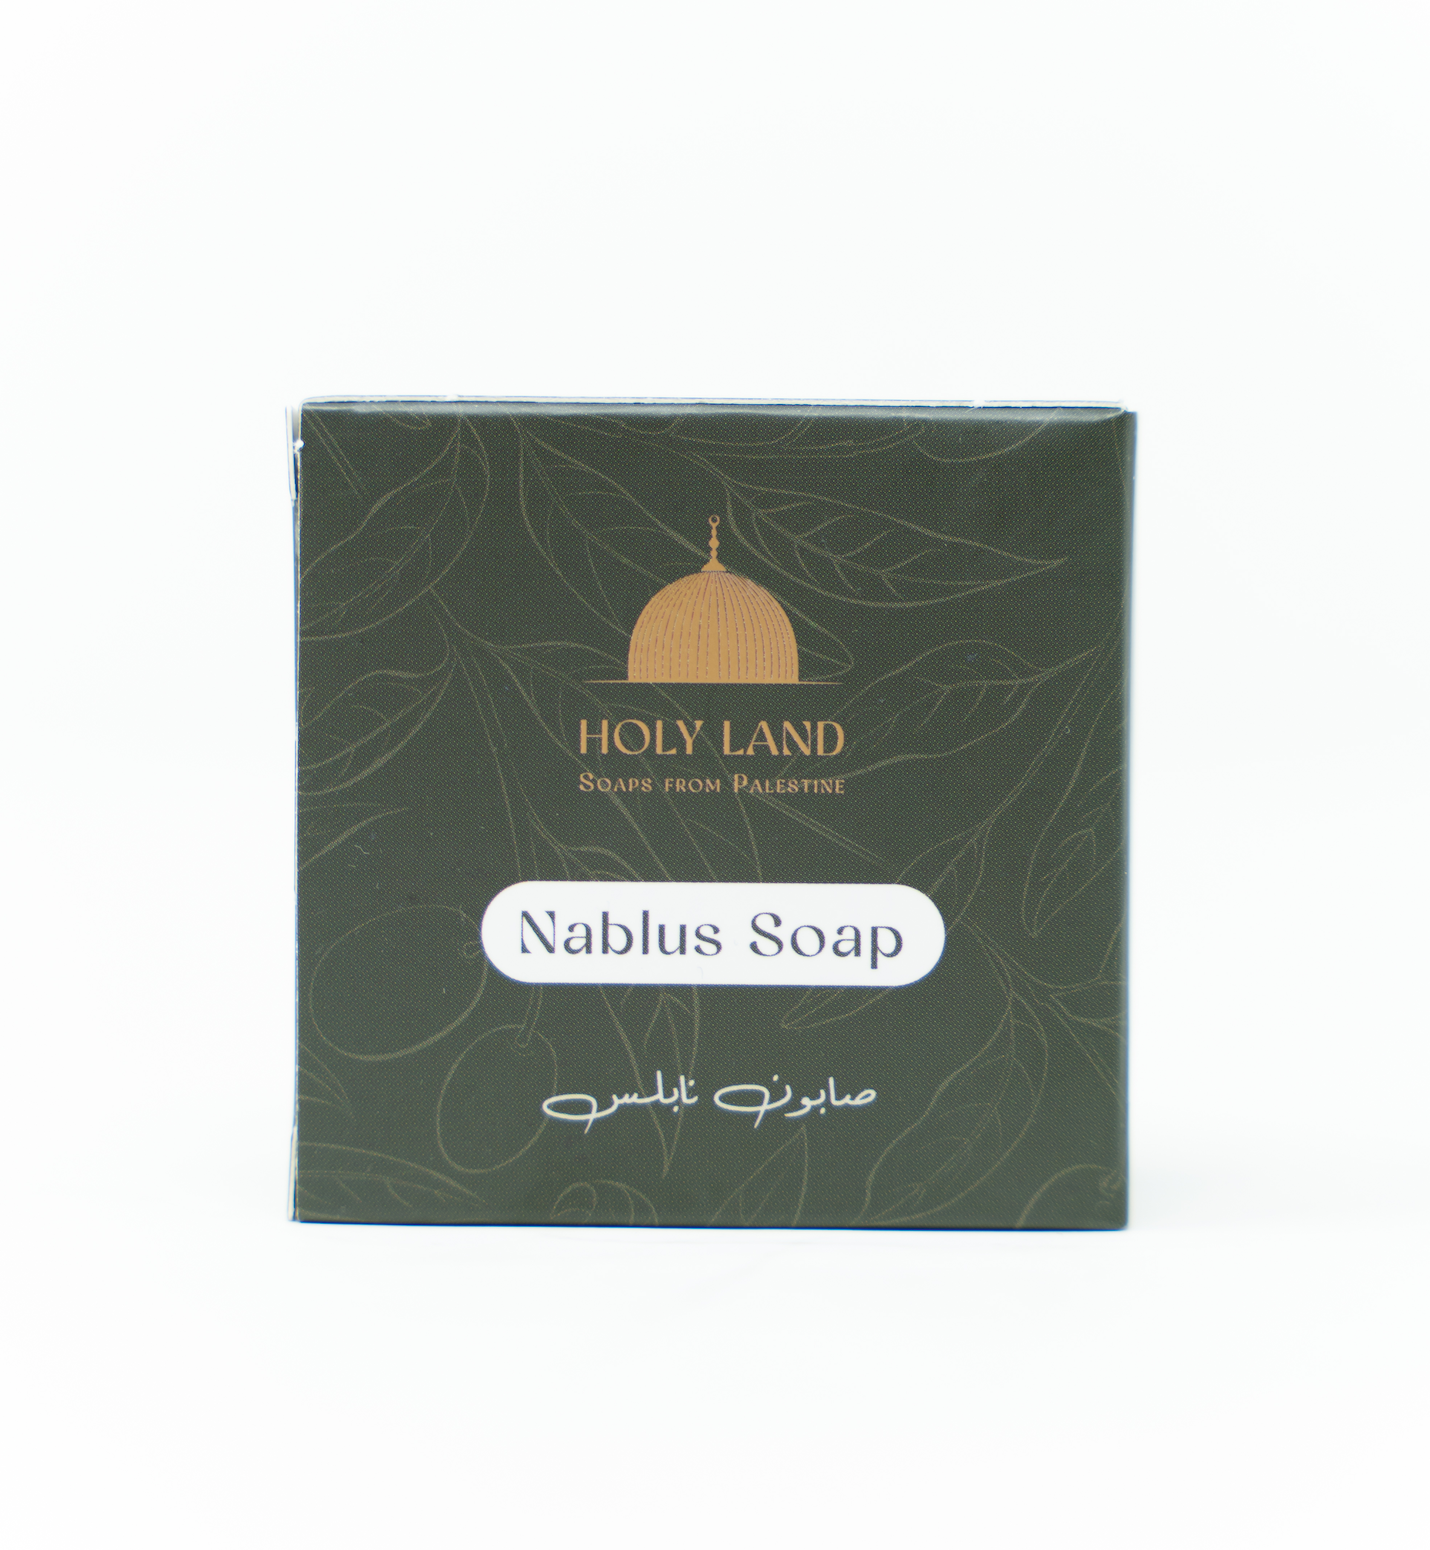 Holy Land Soaps - Nablus Soap